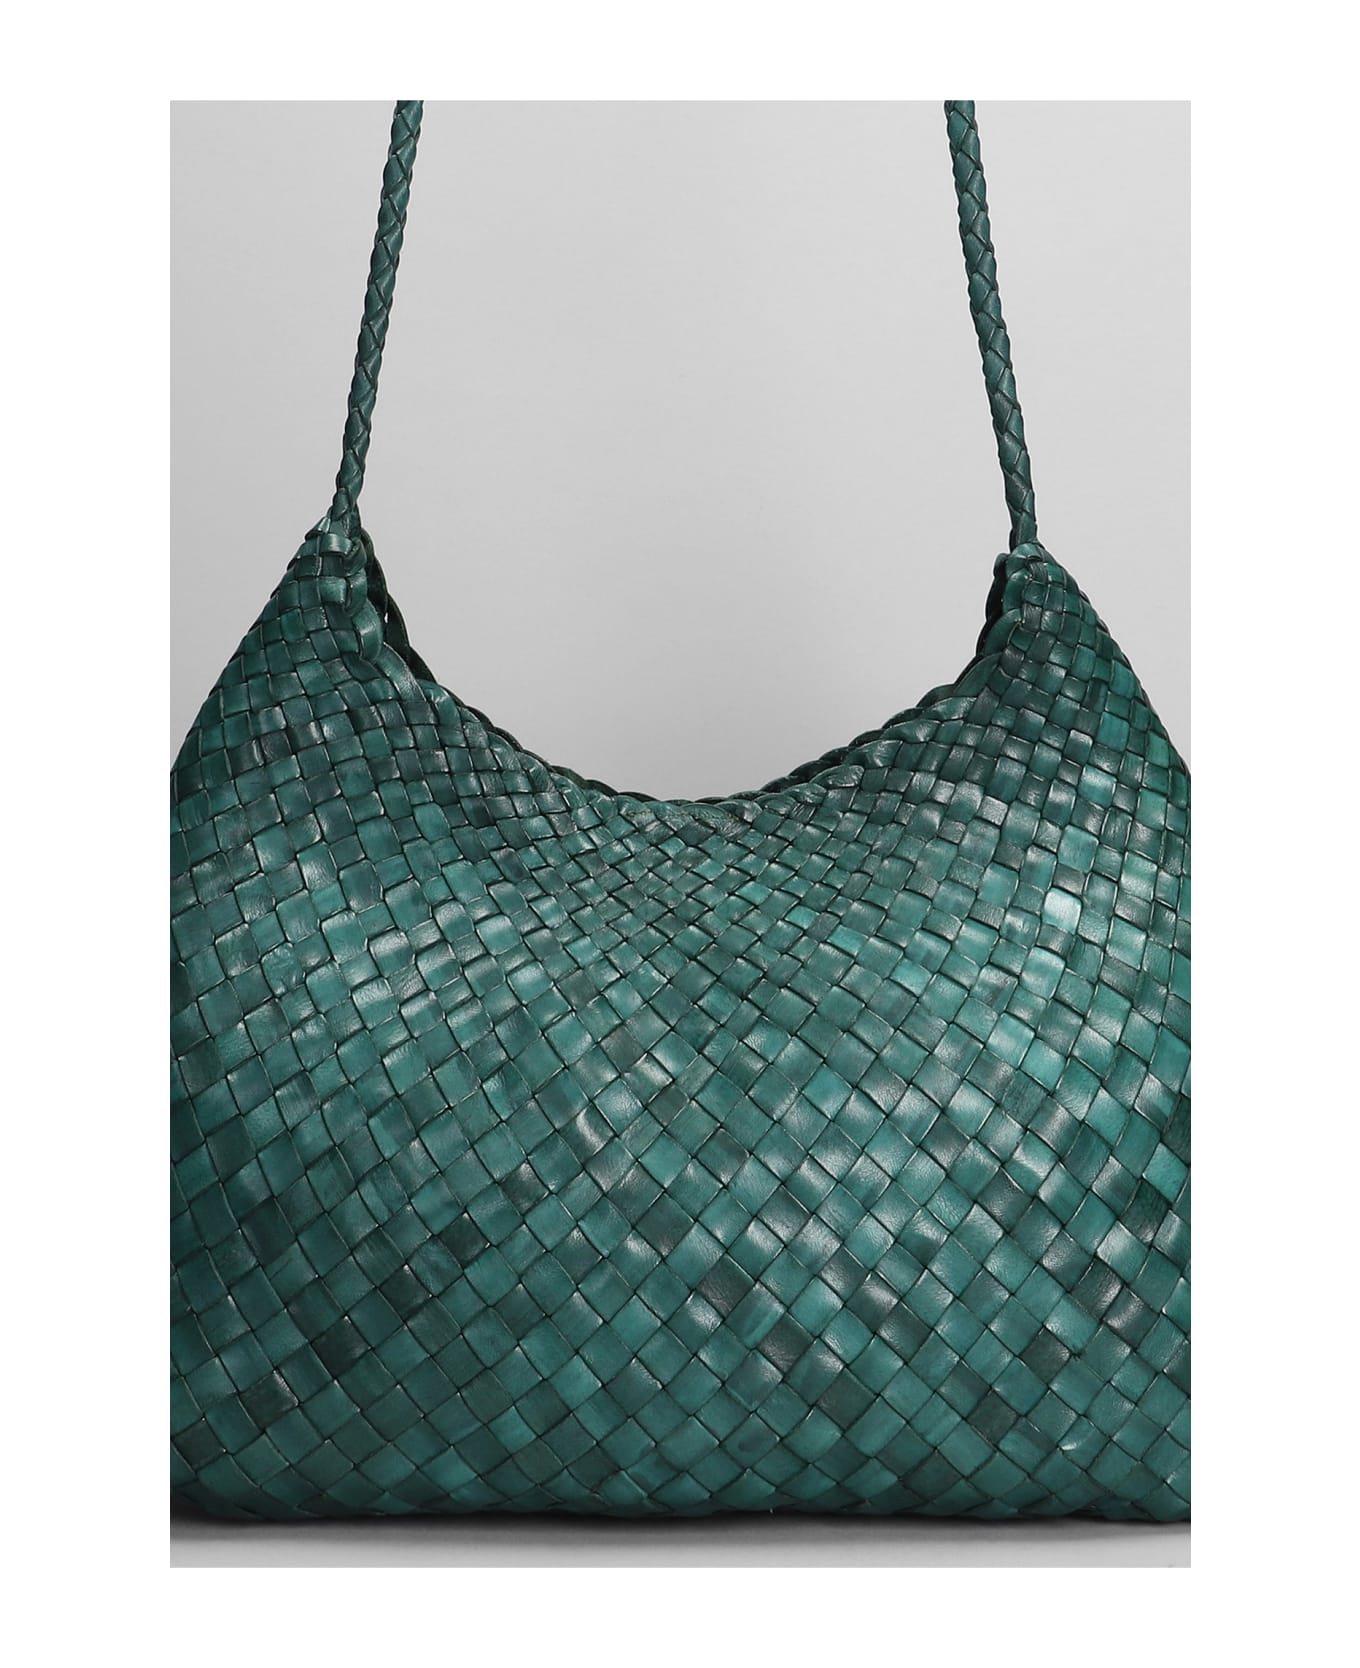 Dragon Diffusion Santa Rosa Shoulder Bag In Green Leather - green